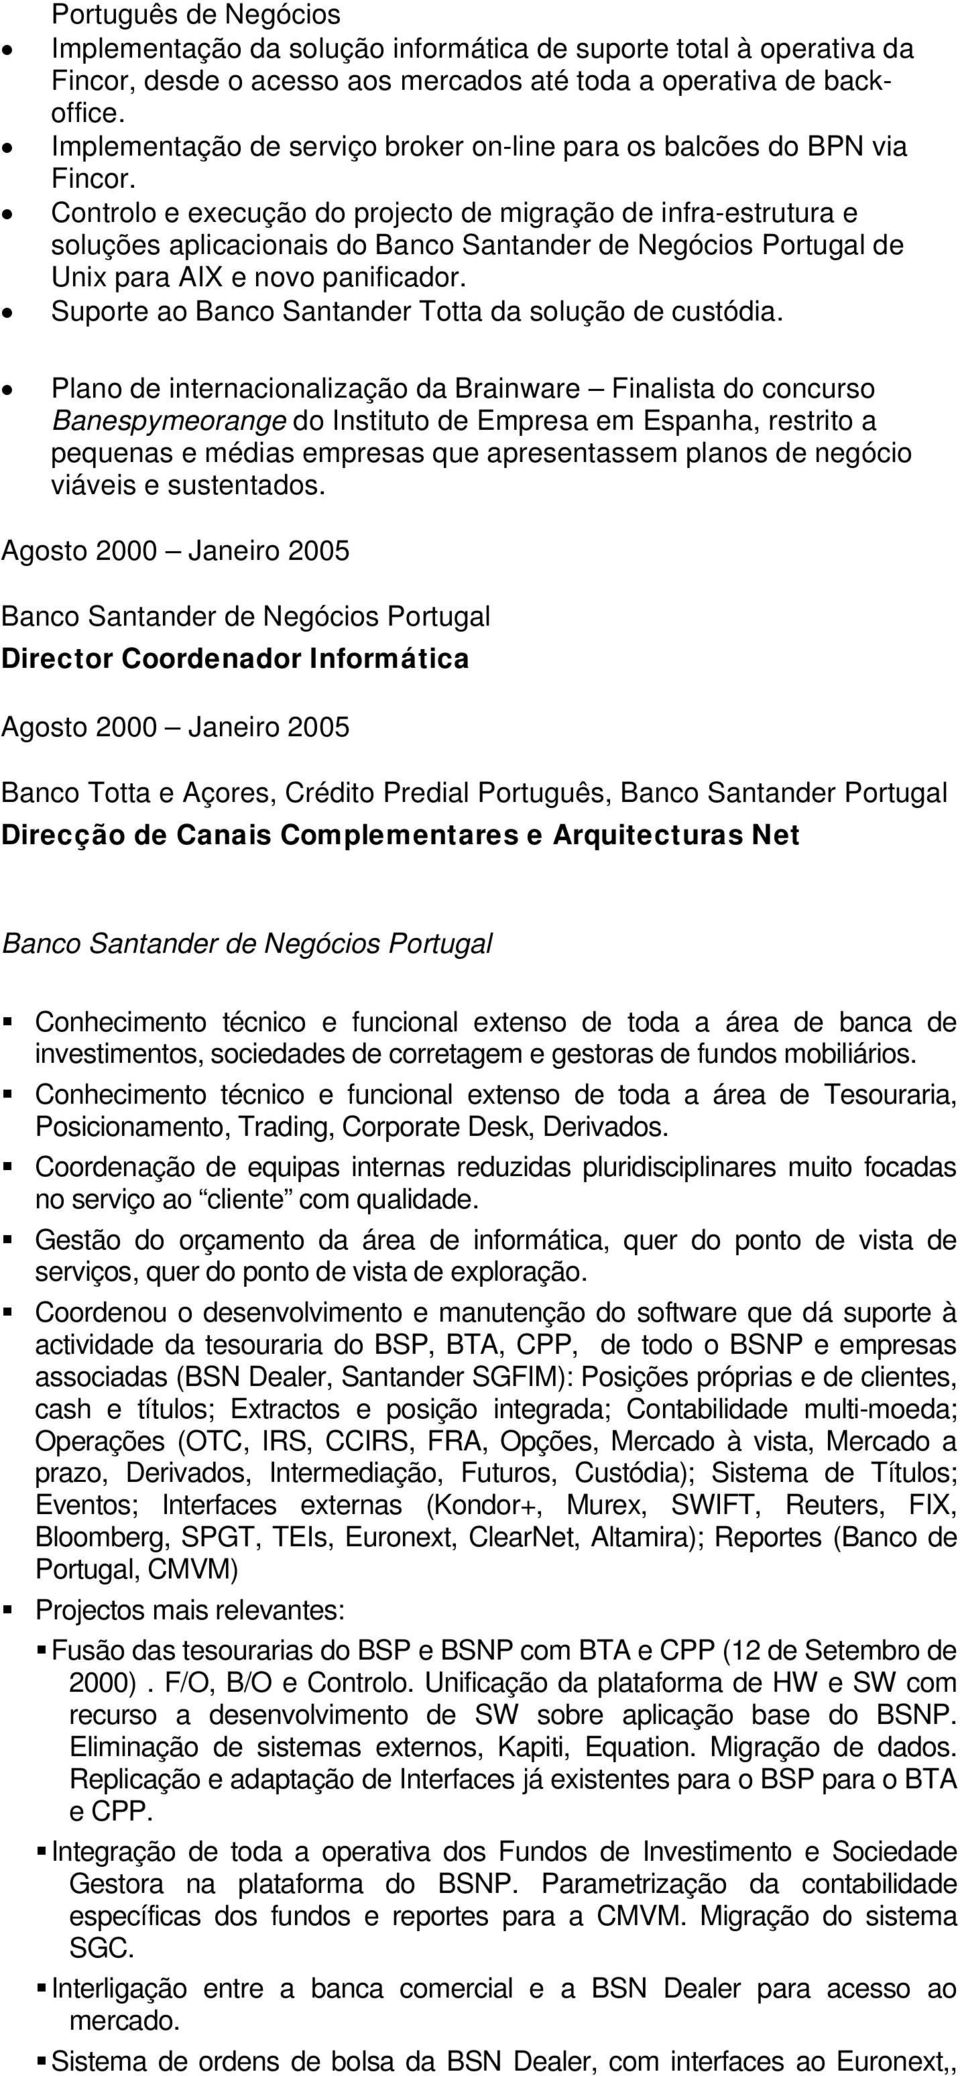 Controlo e execução do projecto de migração de infra-estrutura e soluções aplicacionais do Banco Santander de Negócios Portugal de Unix para AIX e novo panificador.